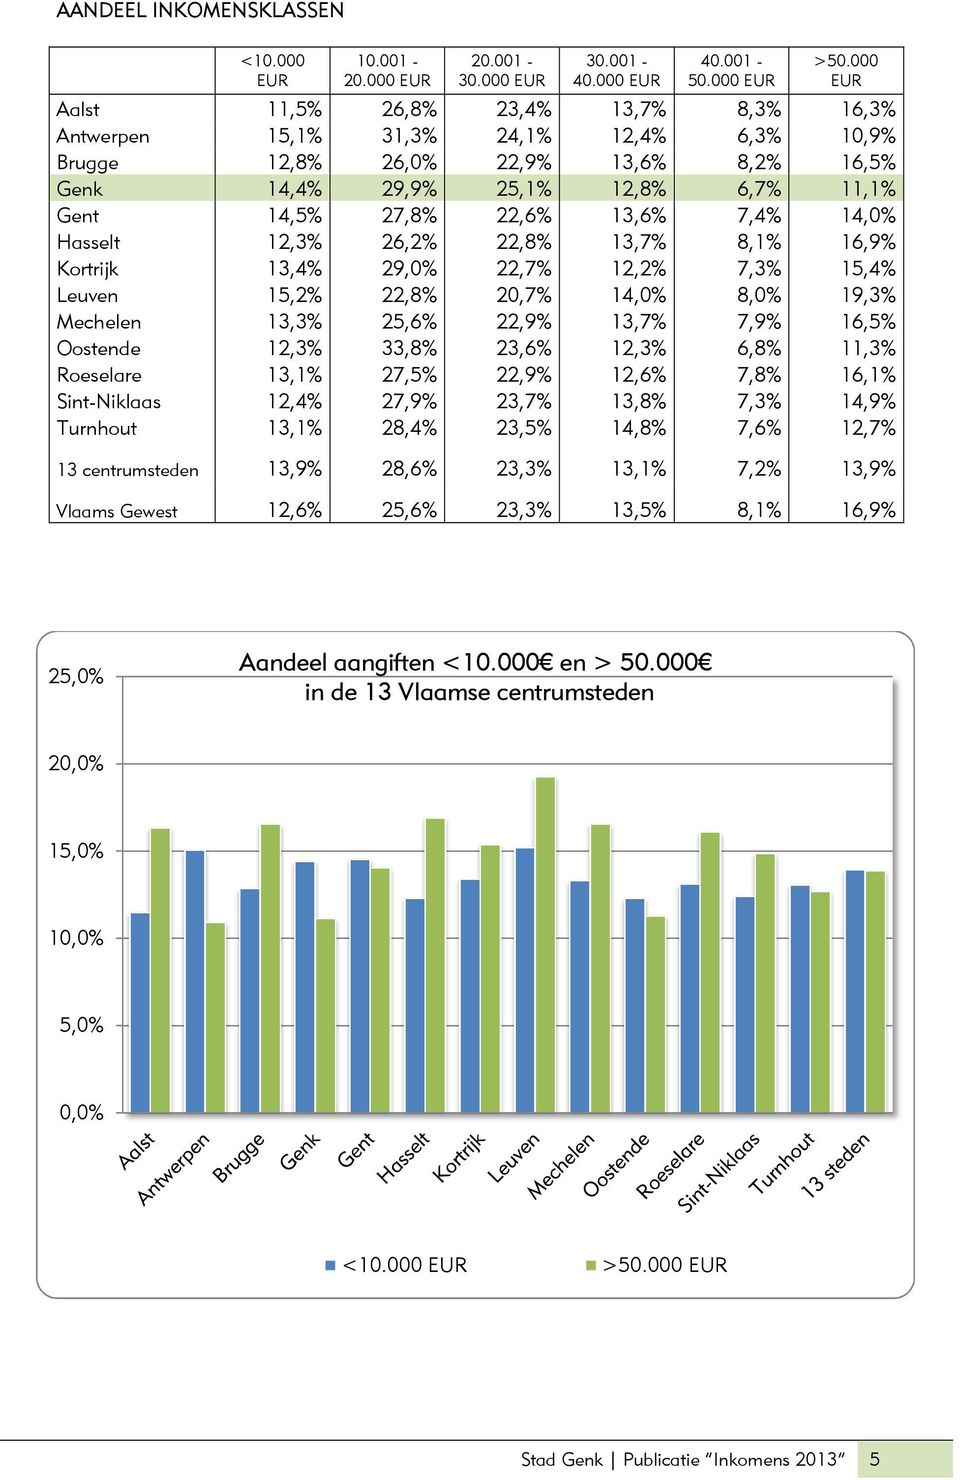 13,6% 7,4% 14,0% Hasselt 12,3% 26,2% 22,8% 13,7% 8,1% 16,9% Kortrijk 13,4% 29,0% 22,7% 12,2% 7,3% 15,4% Leuven 15,2% 22,8% 20,7% 14,0% 8,0% 19,3% Mechelen 13,3% 25,6% 22,9% 13,7% 7,9% 16,5% Oostende